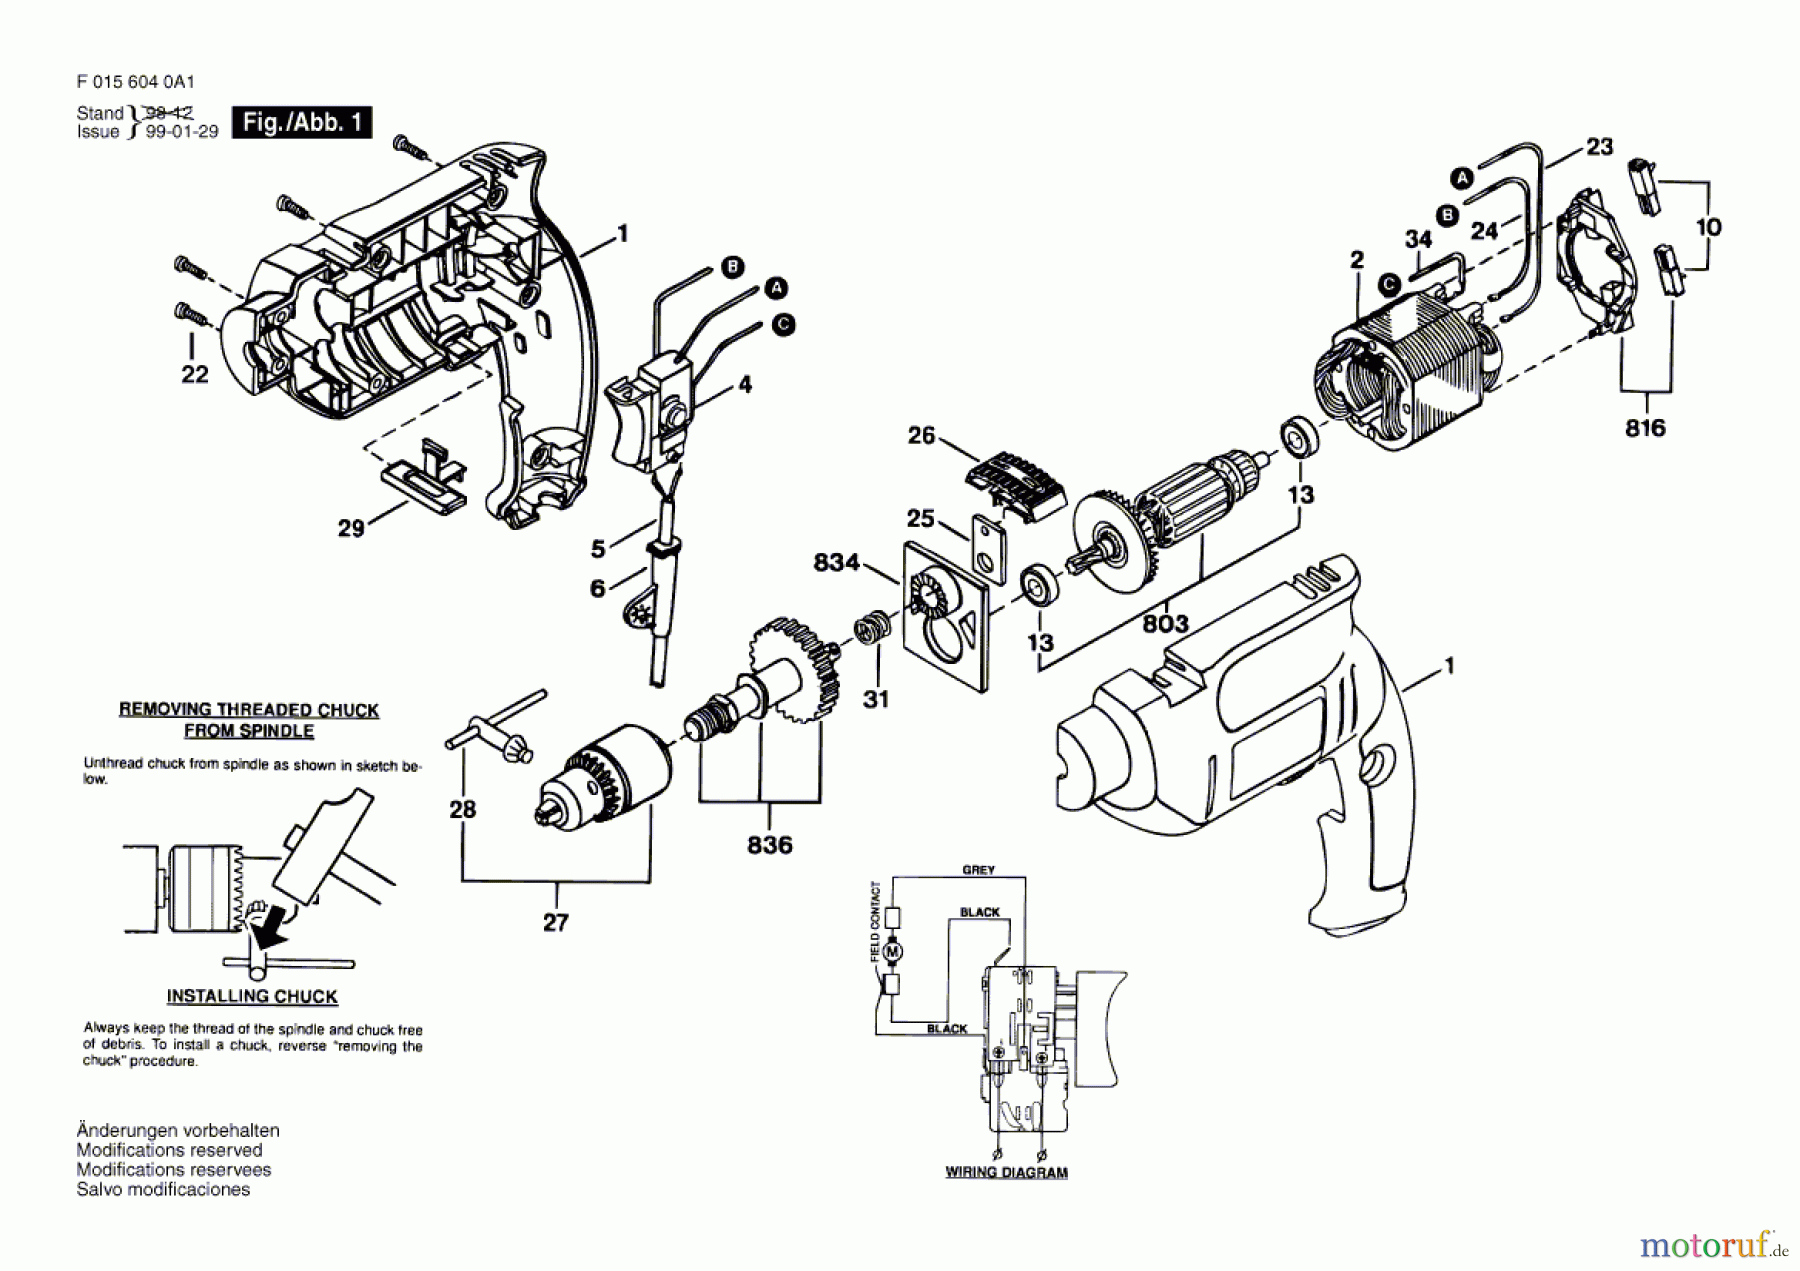  Bosch Werkzeug Ratsche 6010 Seite 1